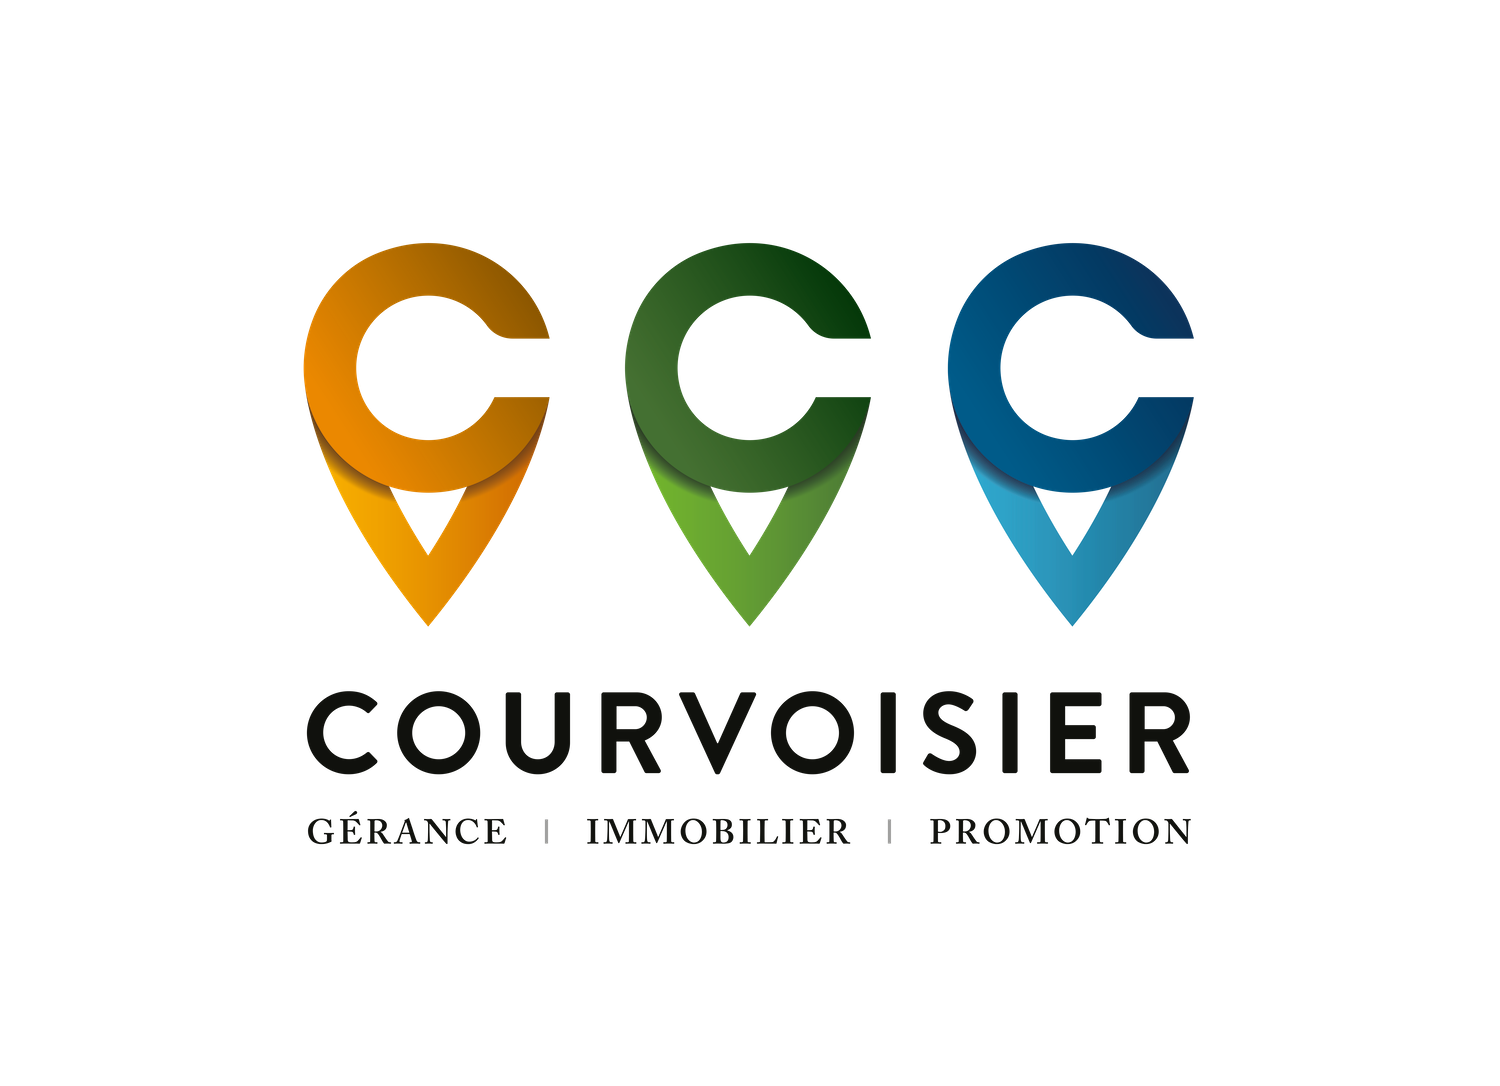 courvoisier